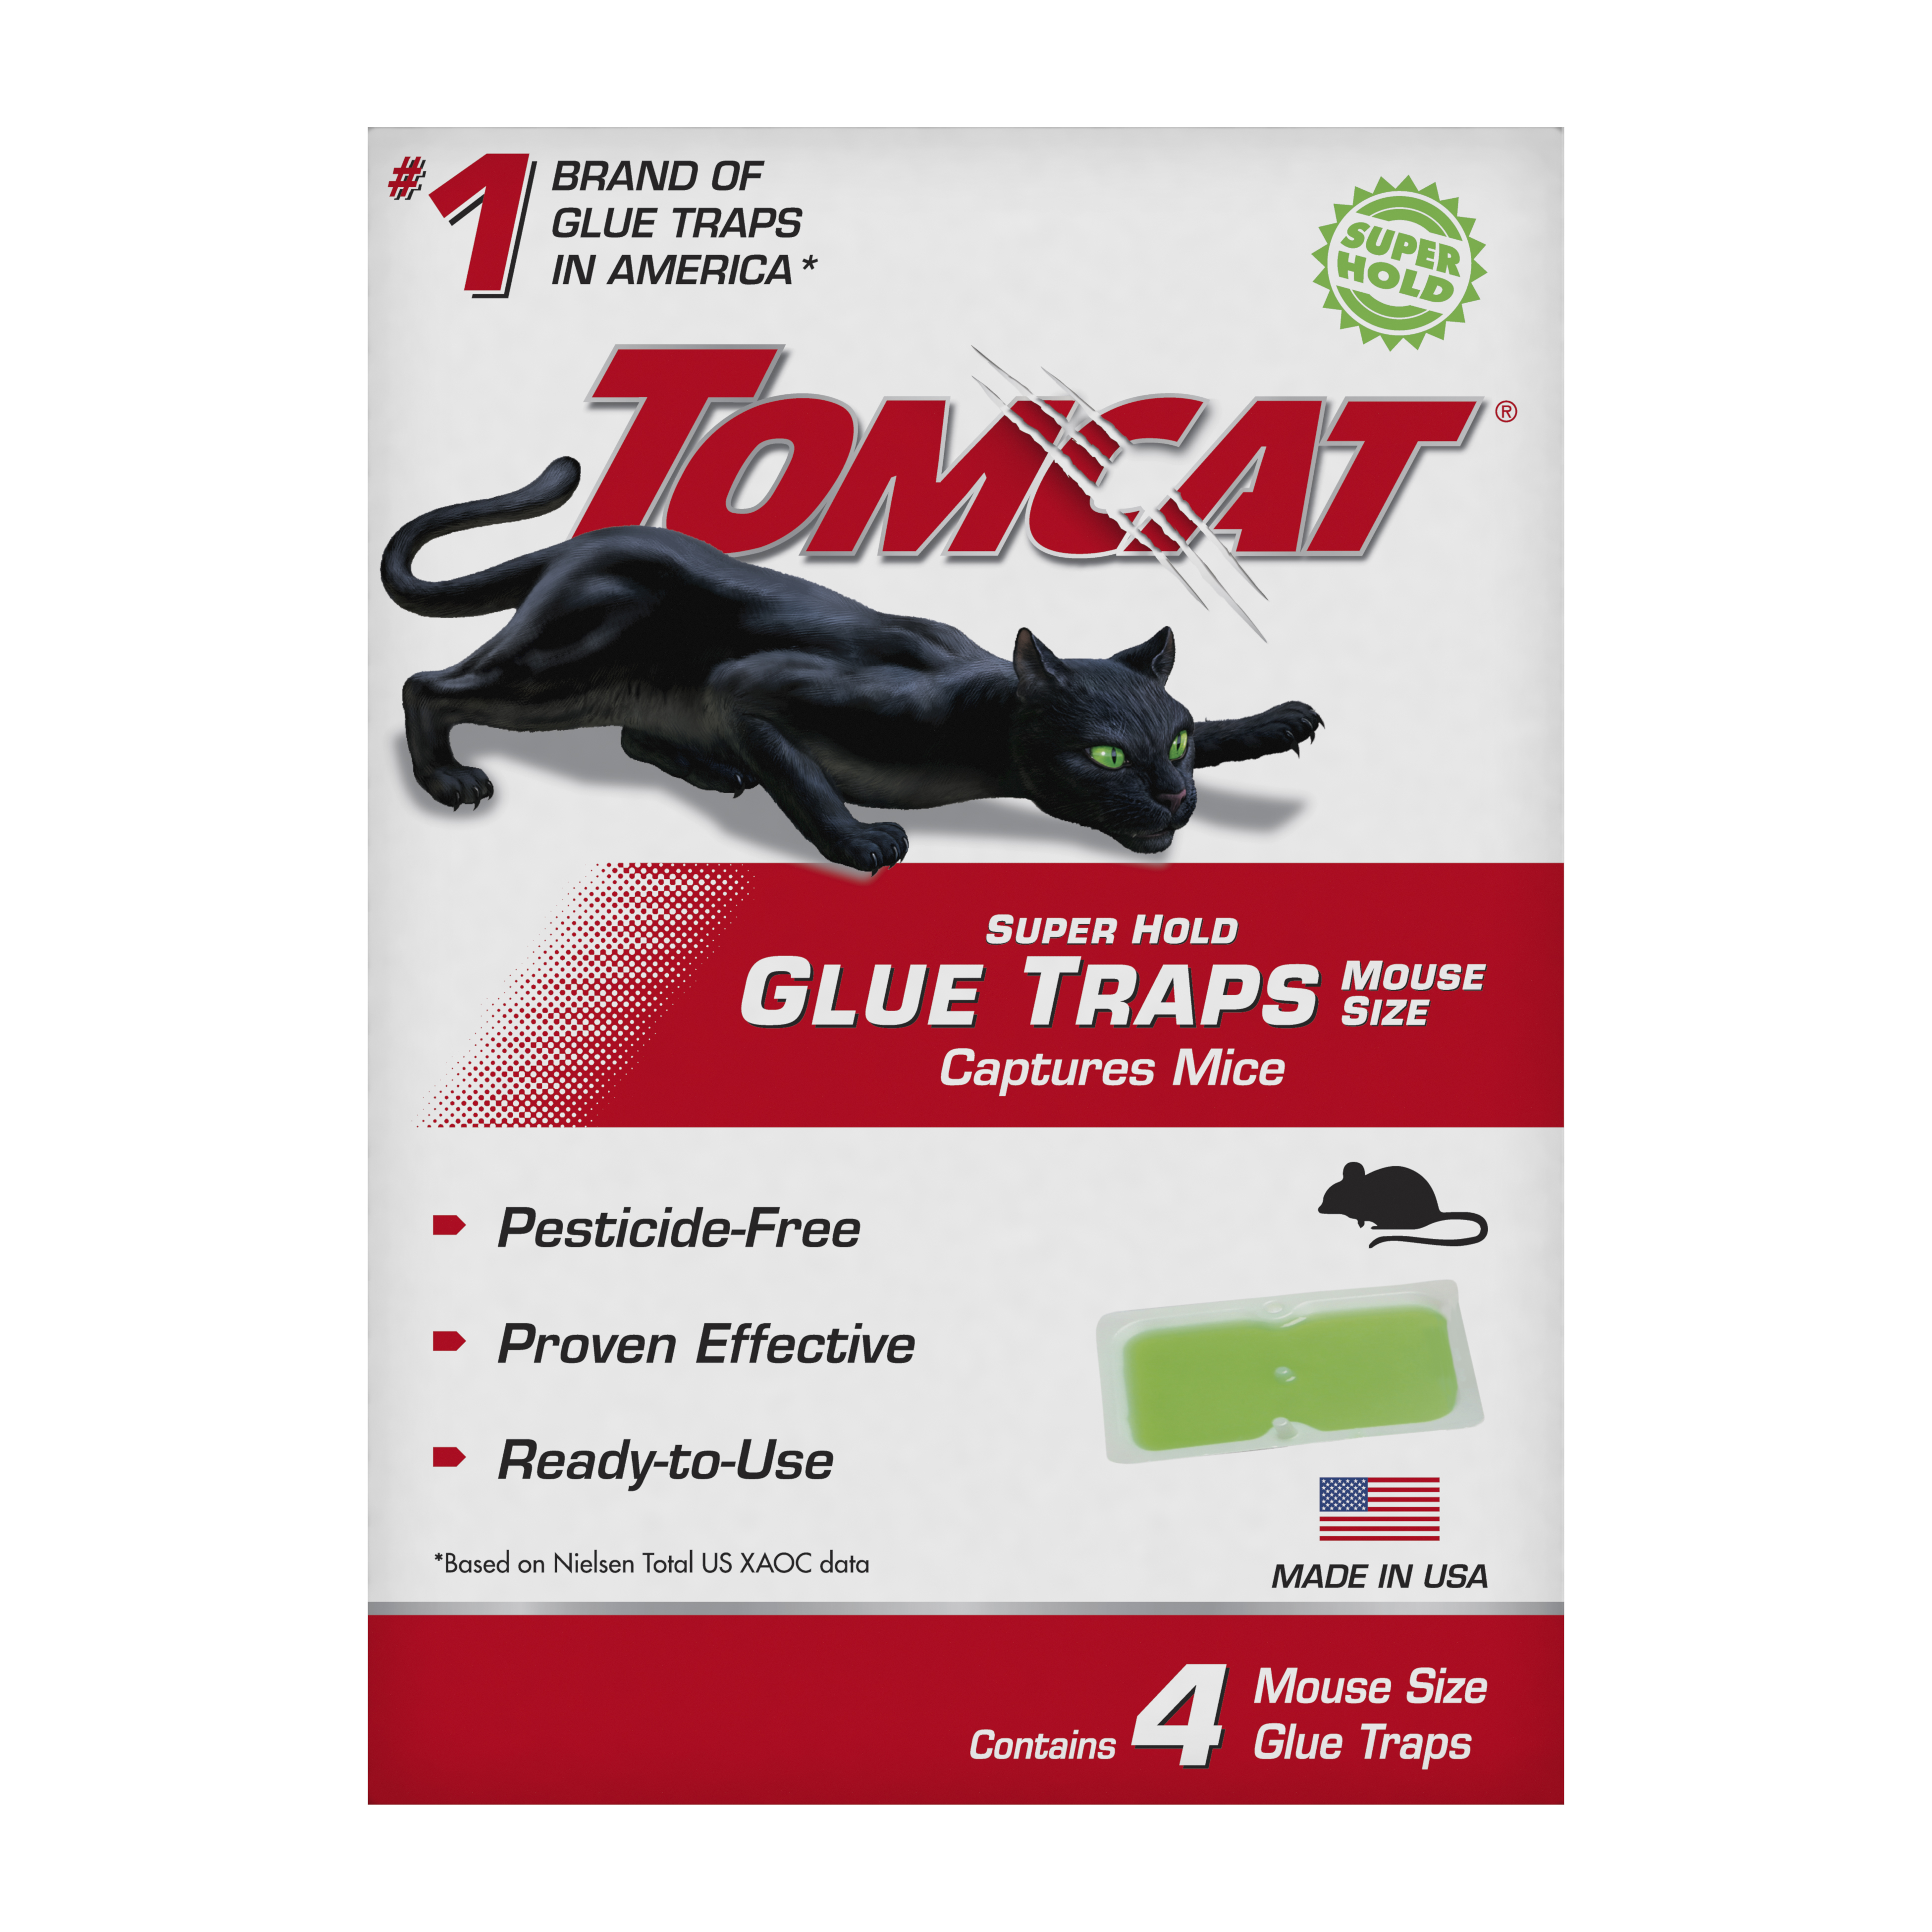 sticky mouse traps